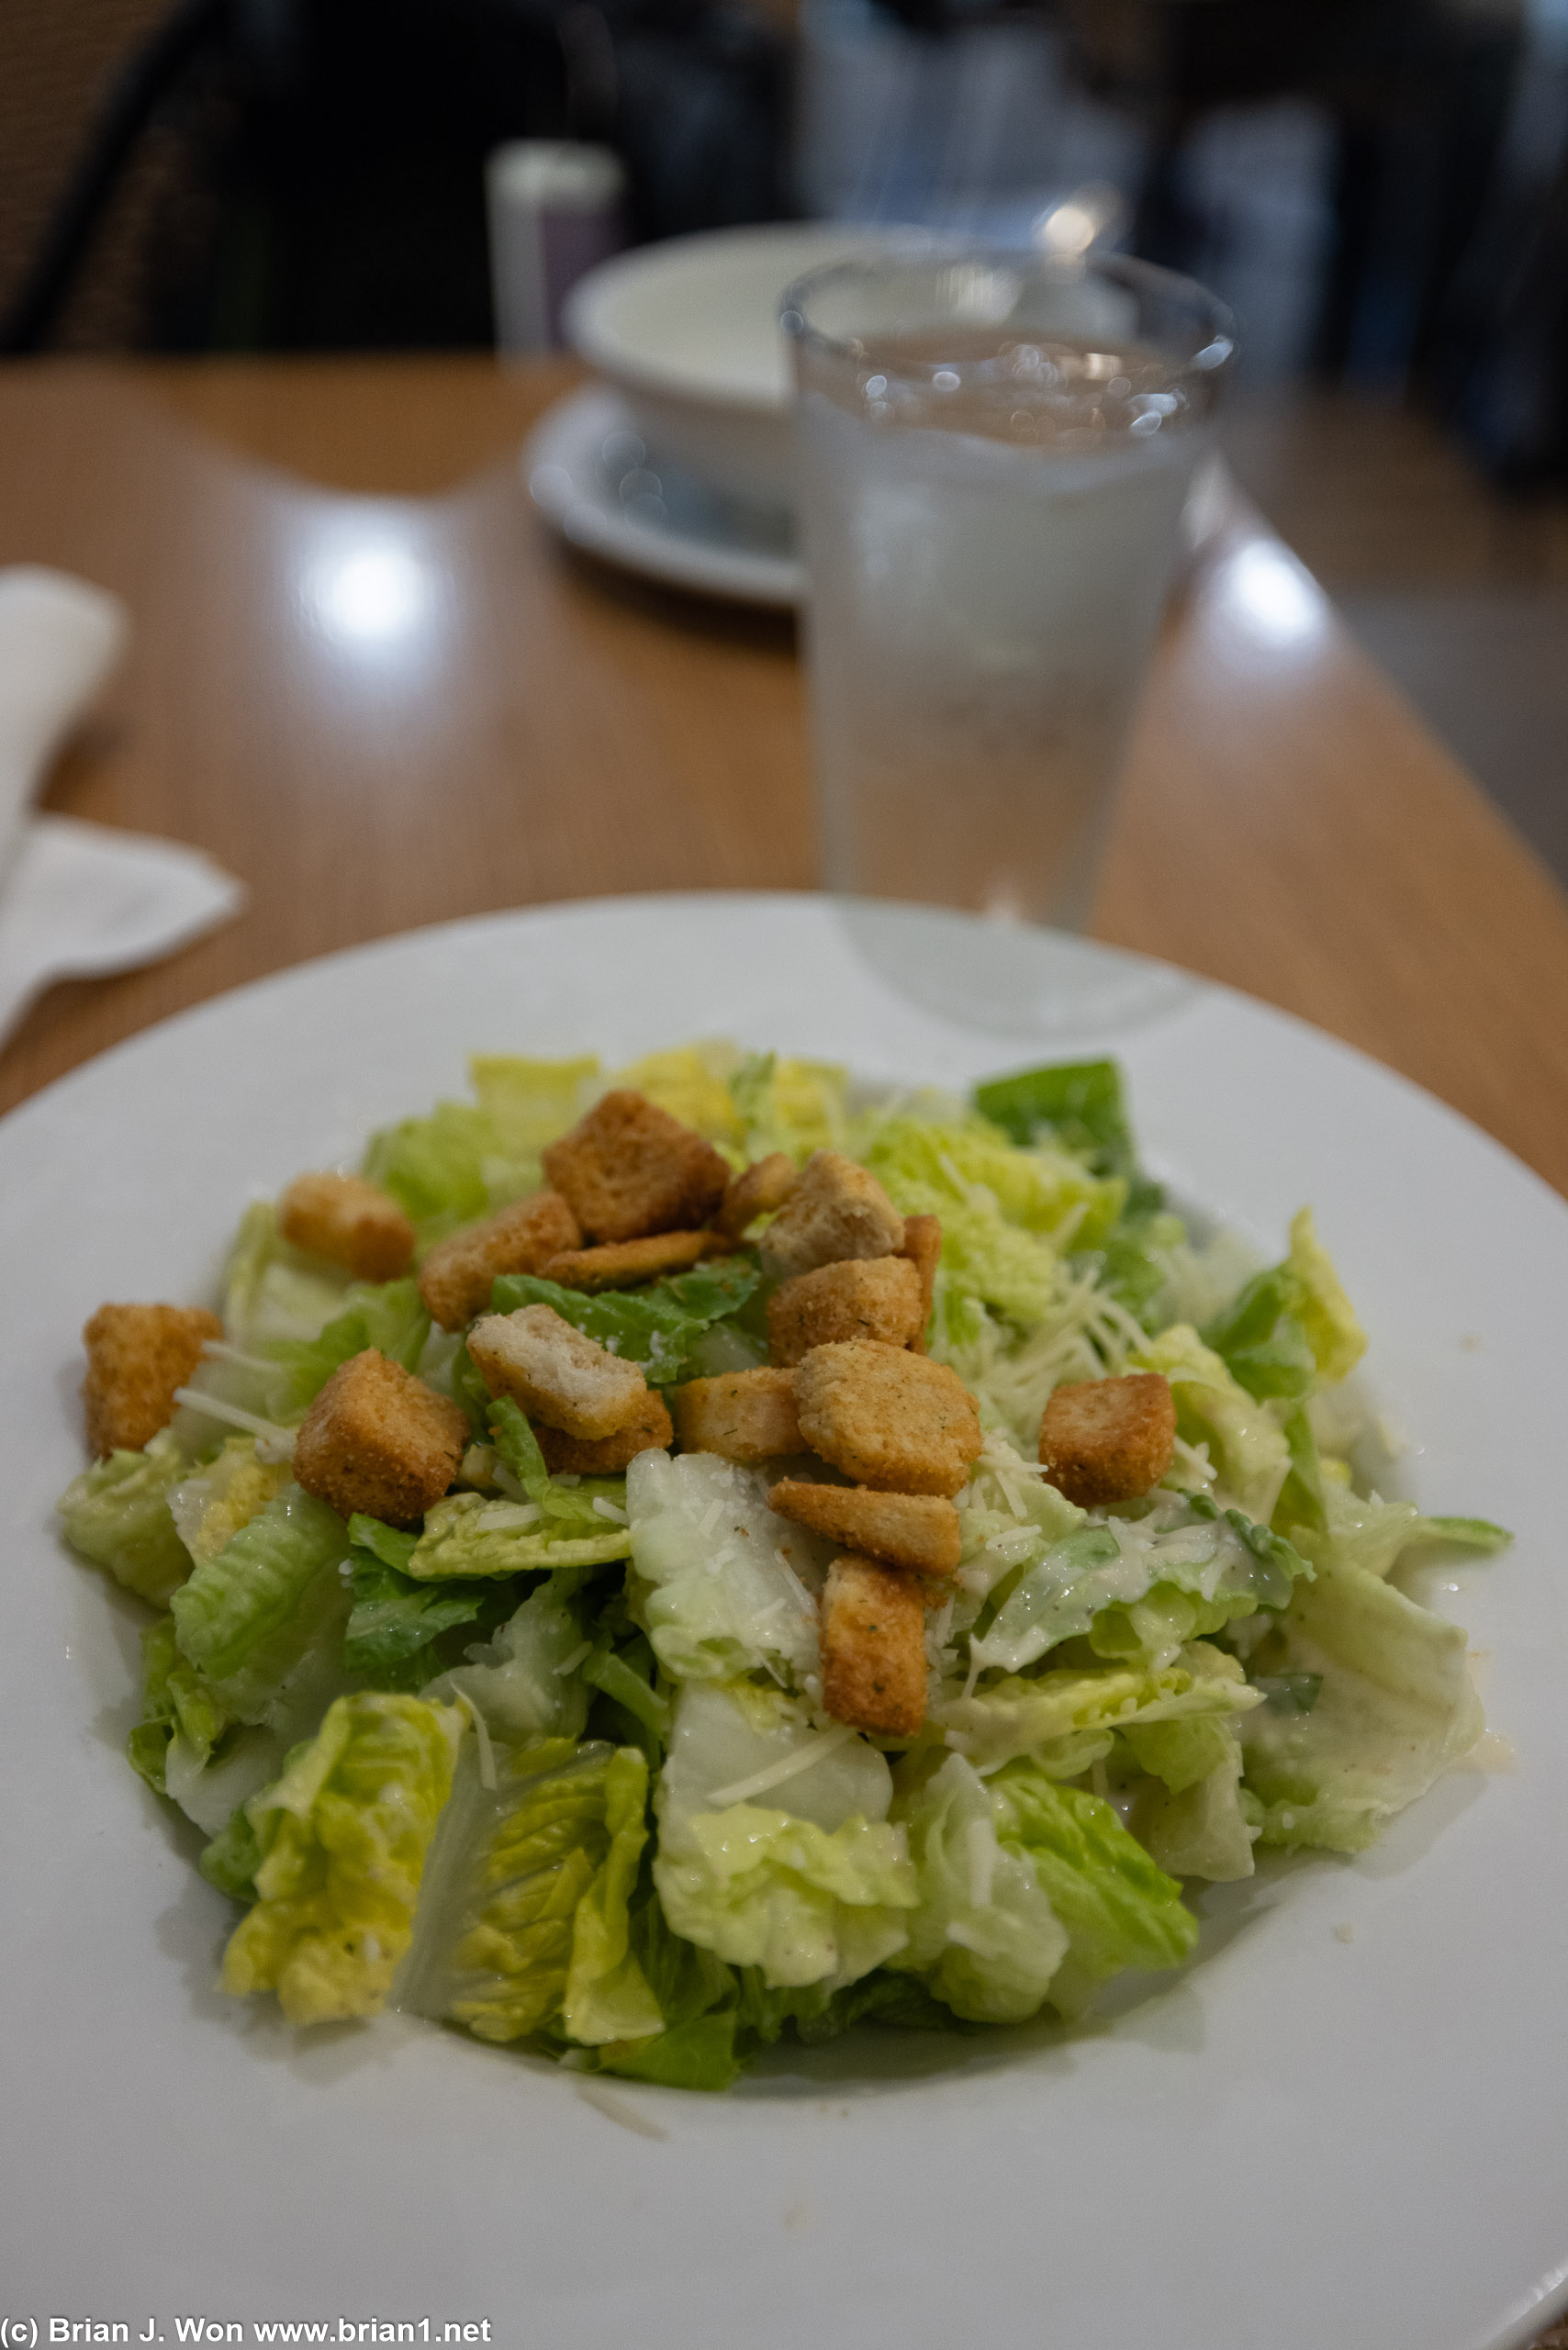 Caesar salad was likewise decent.